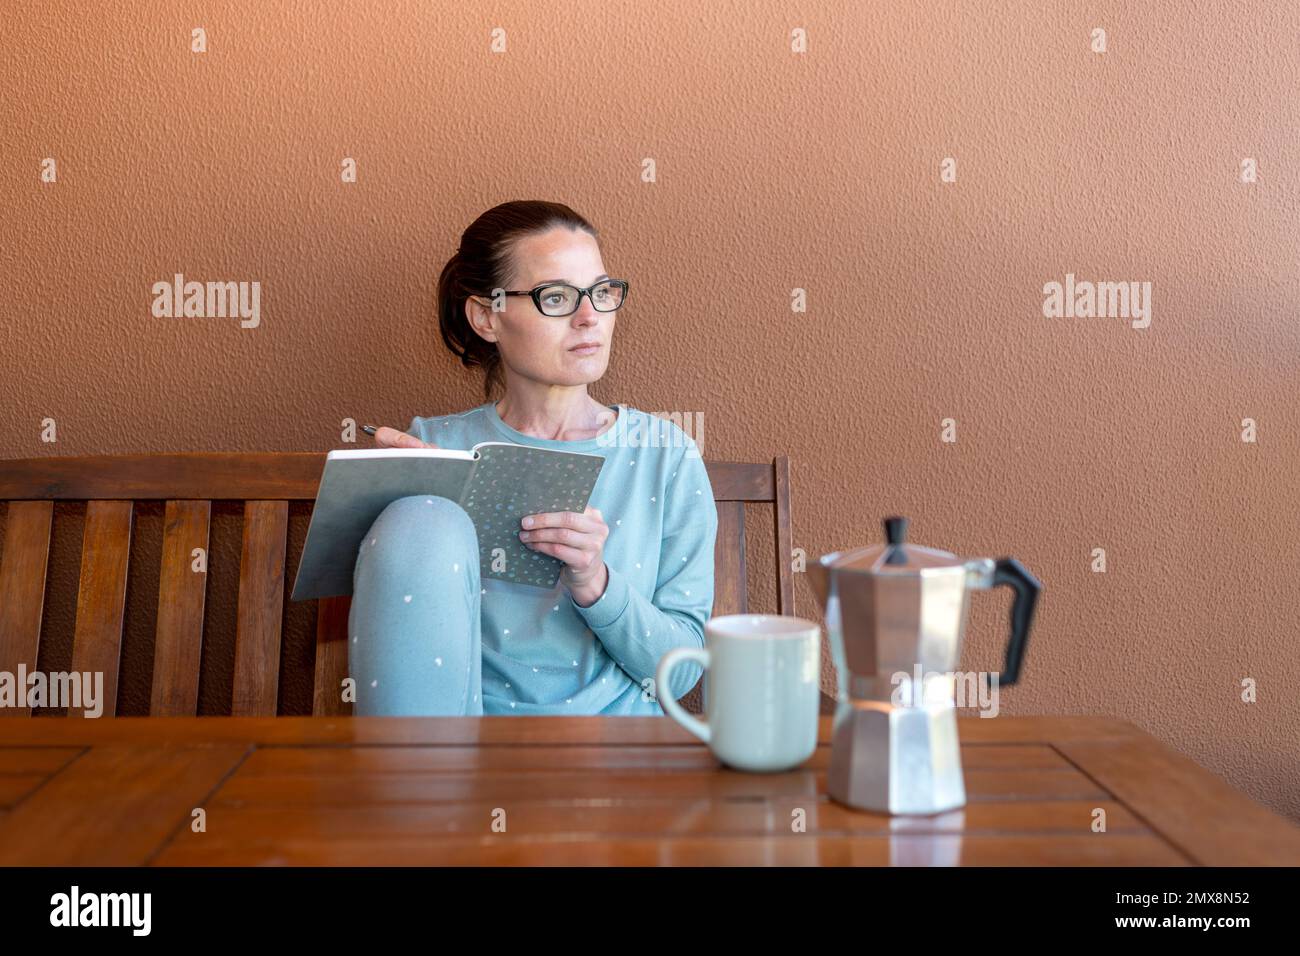 Femme assise dans son pyjama et essorée dans un carnet, café du matin sur une table en bois. Banque D'Images